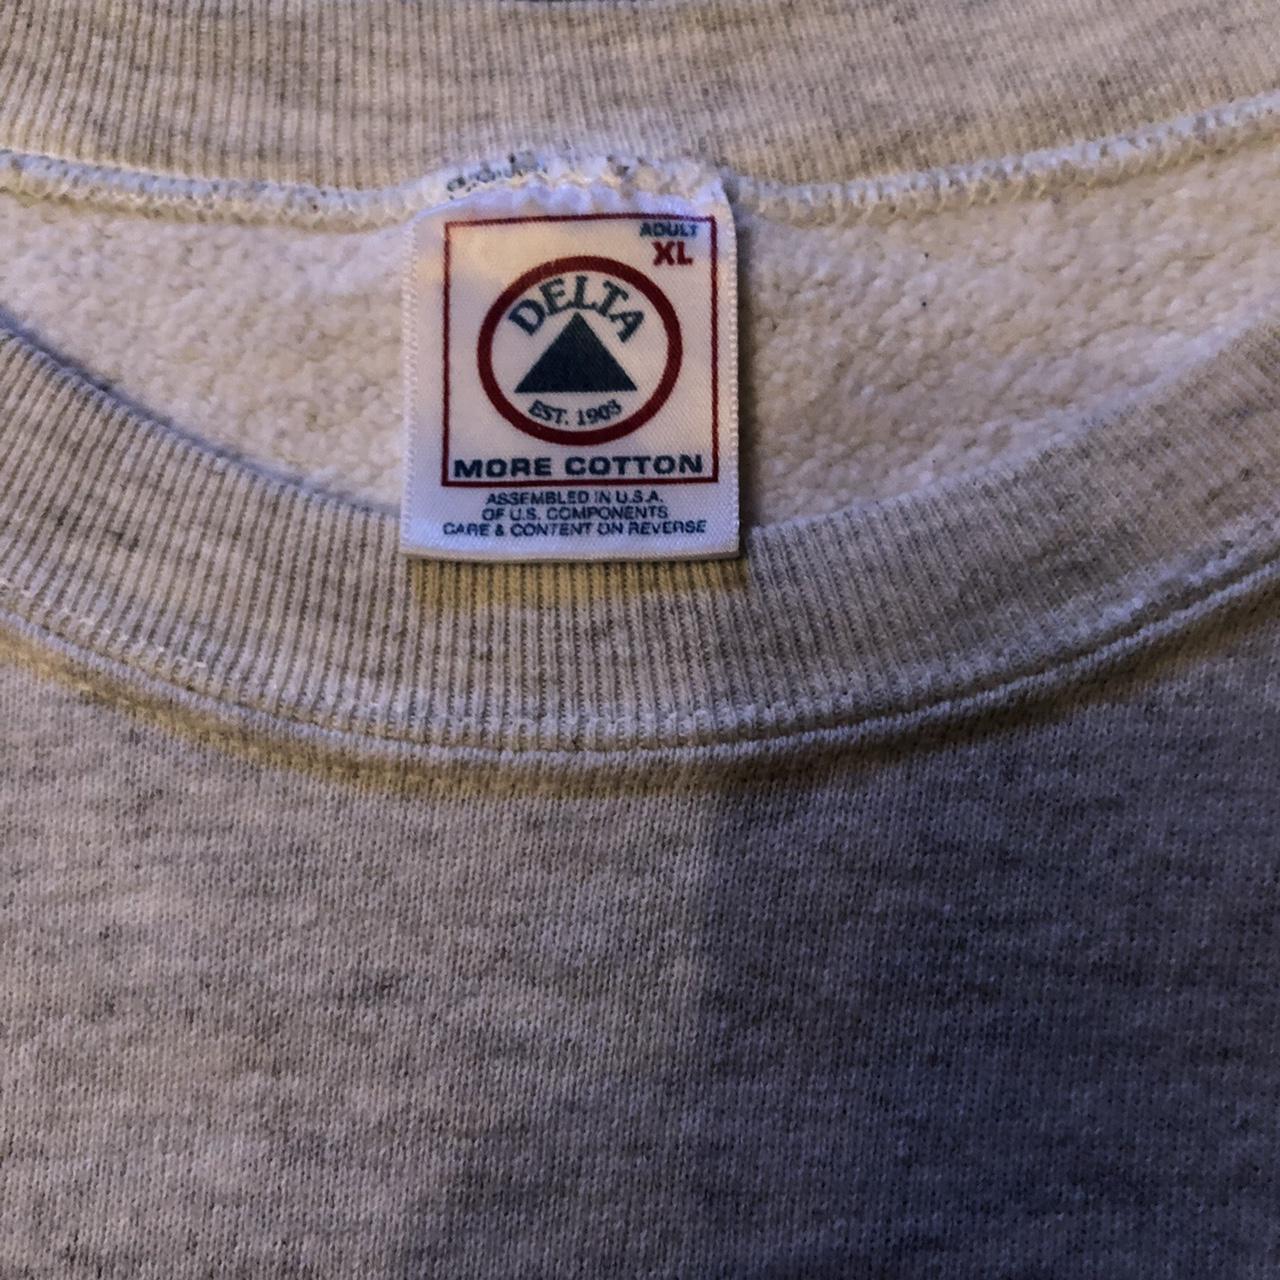 Product Image 3 - Vintage Jesus sweatshirt 
Good used